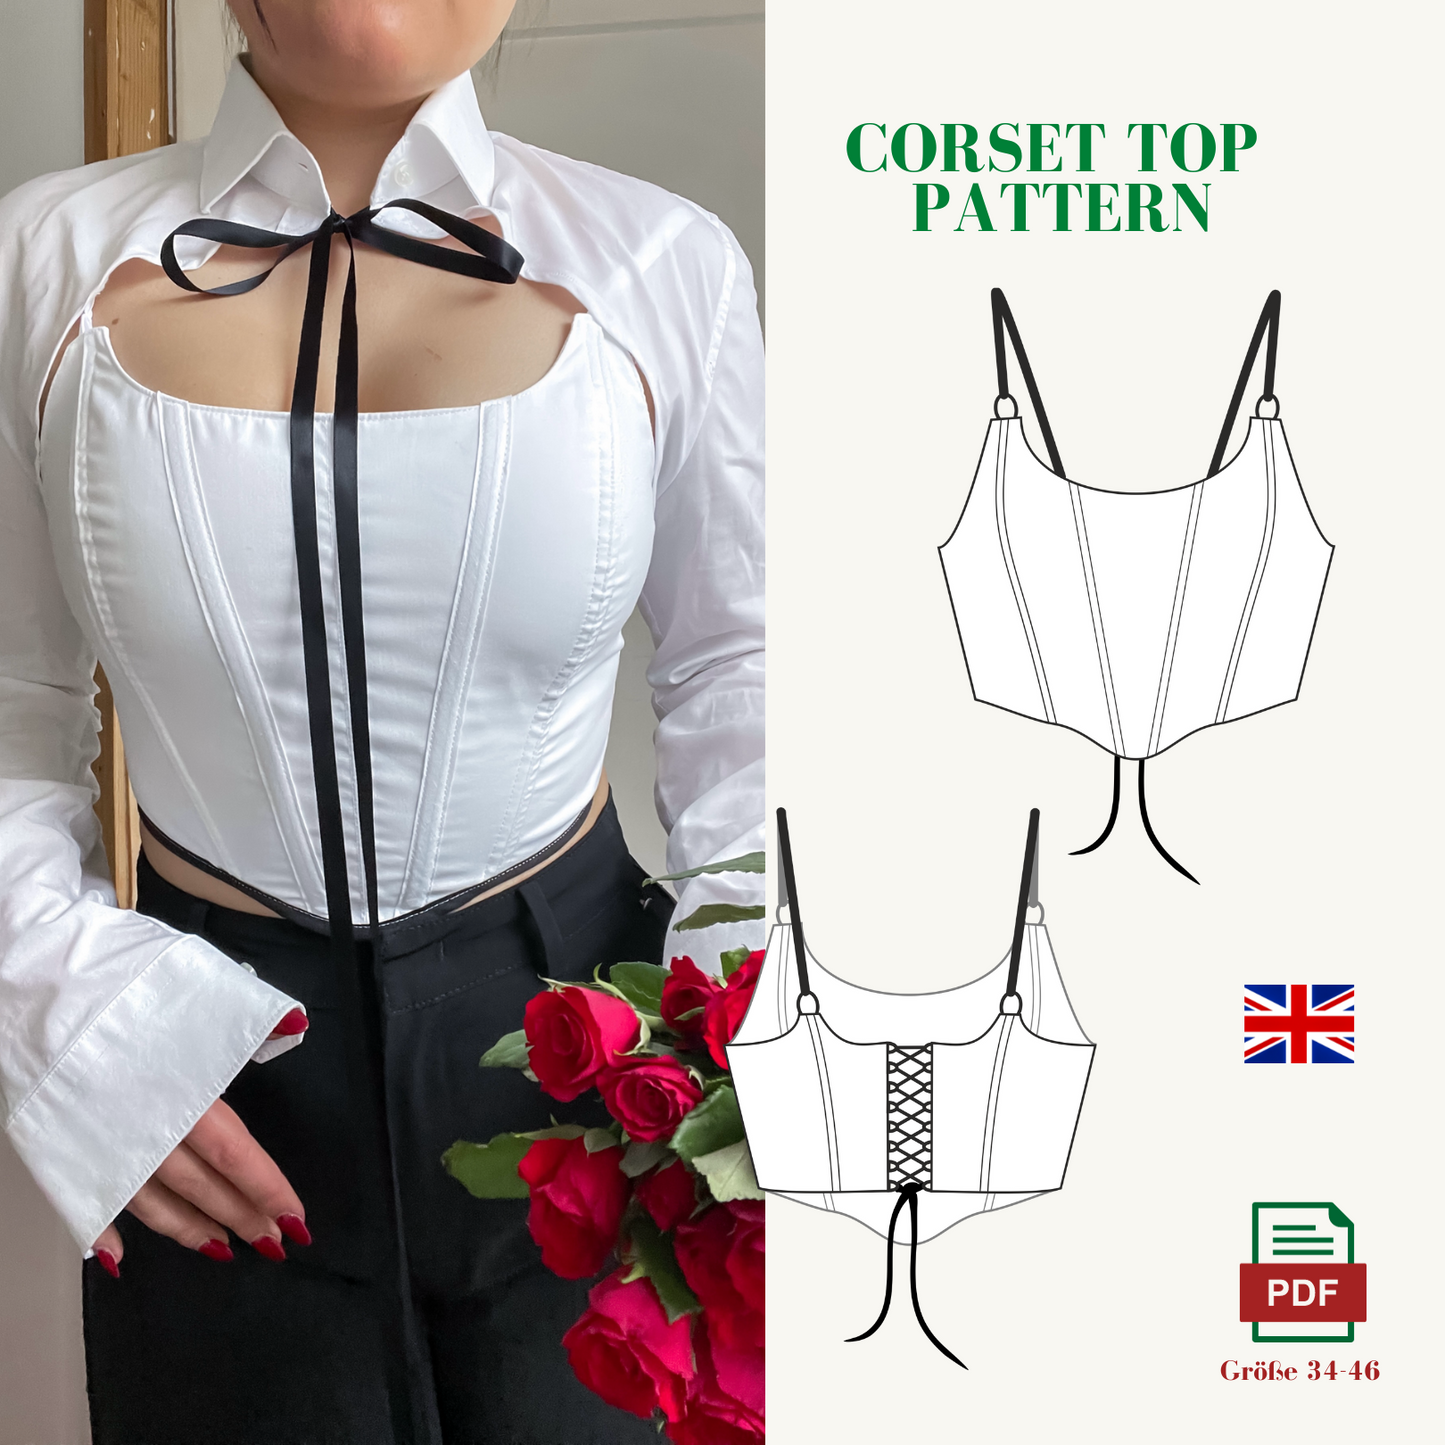 VintageBambi corset-belt pattern ENGLISH